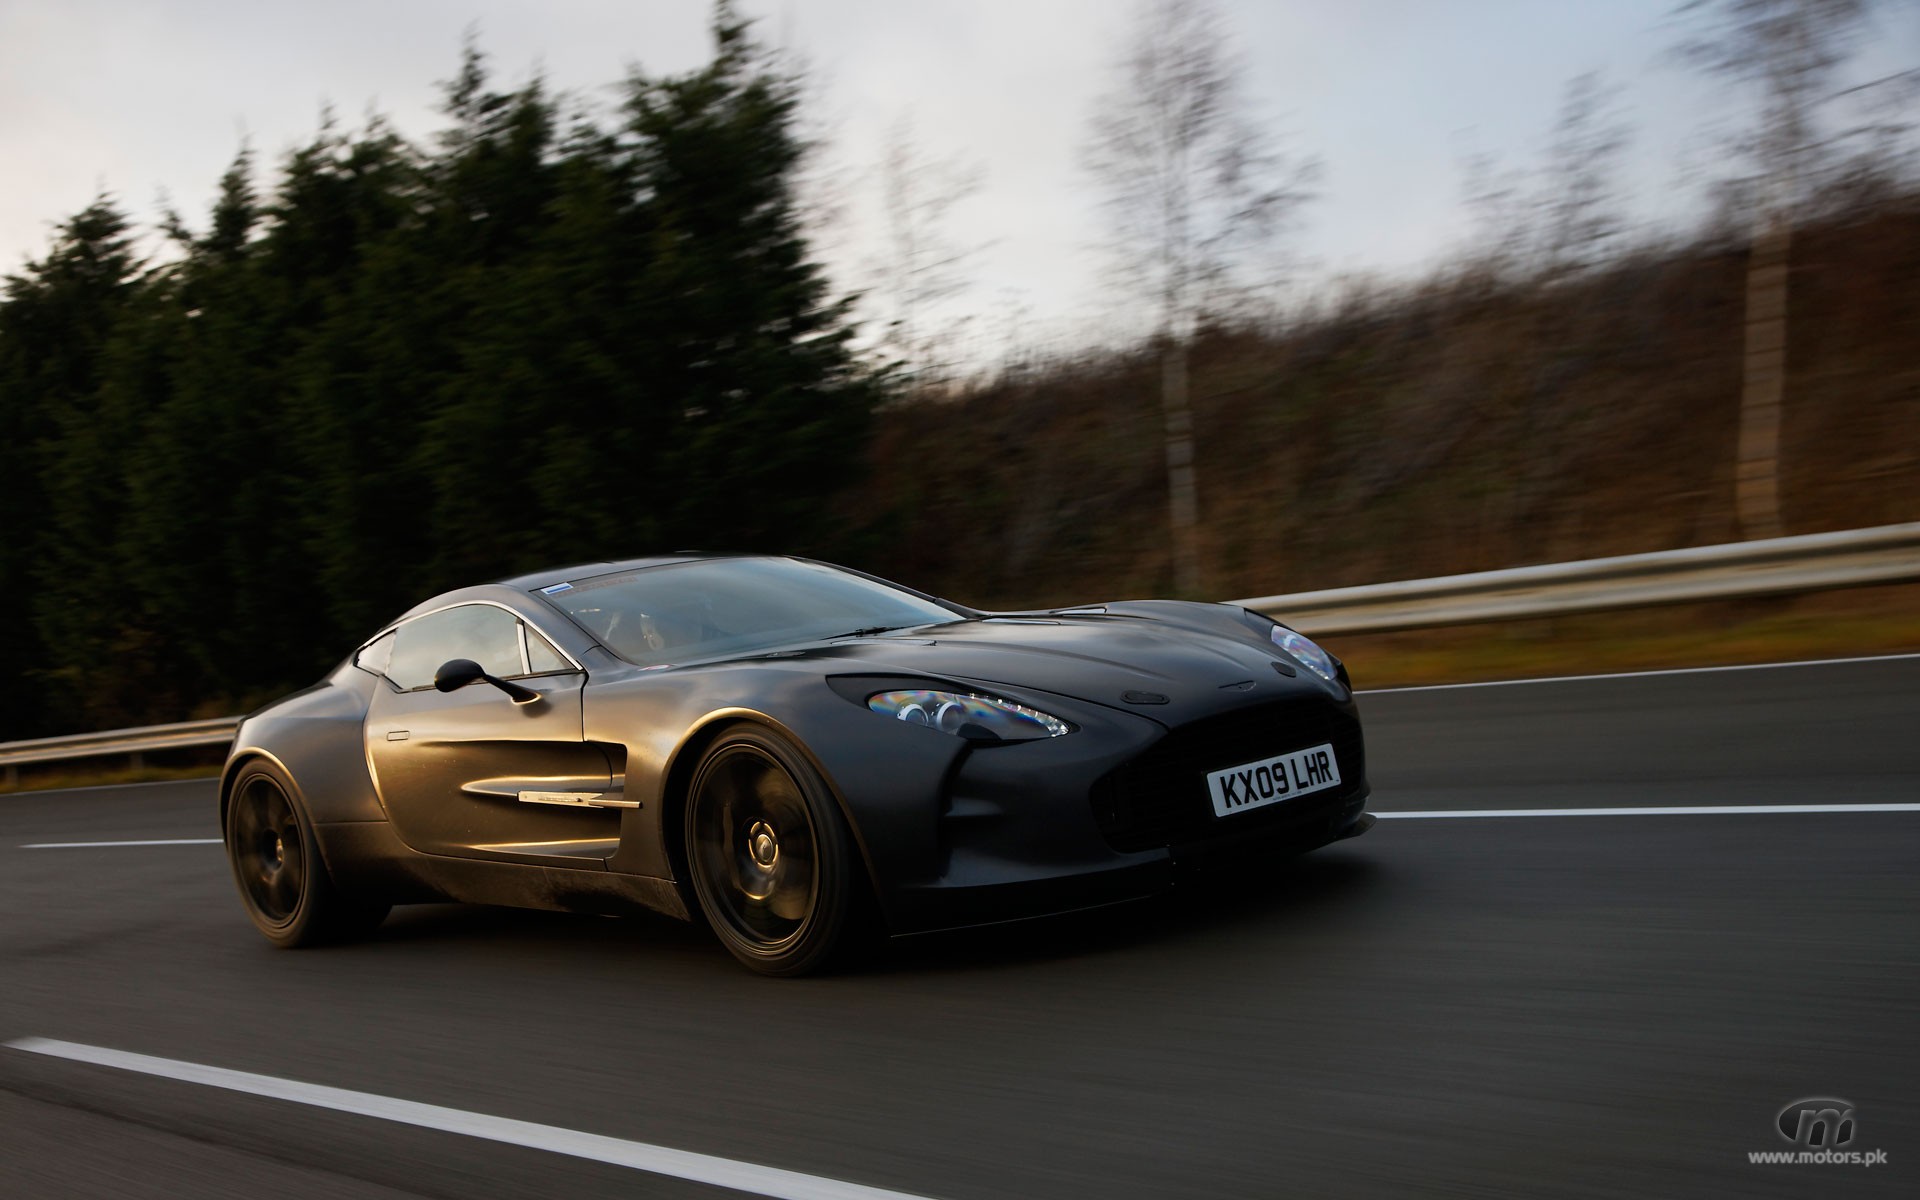 Aston Martin on highway